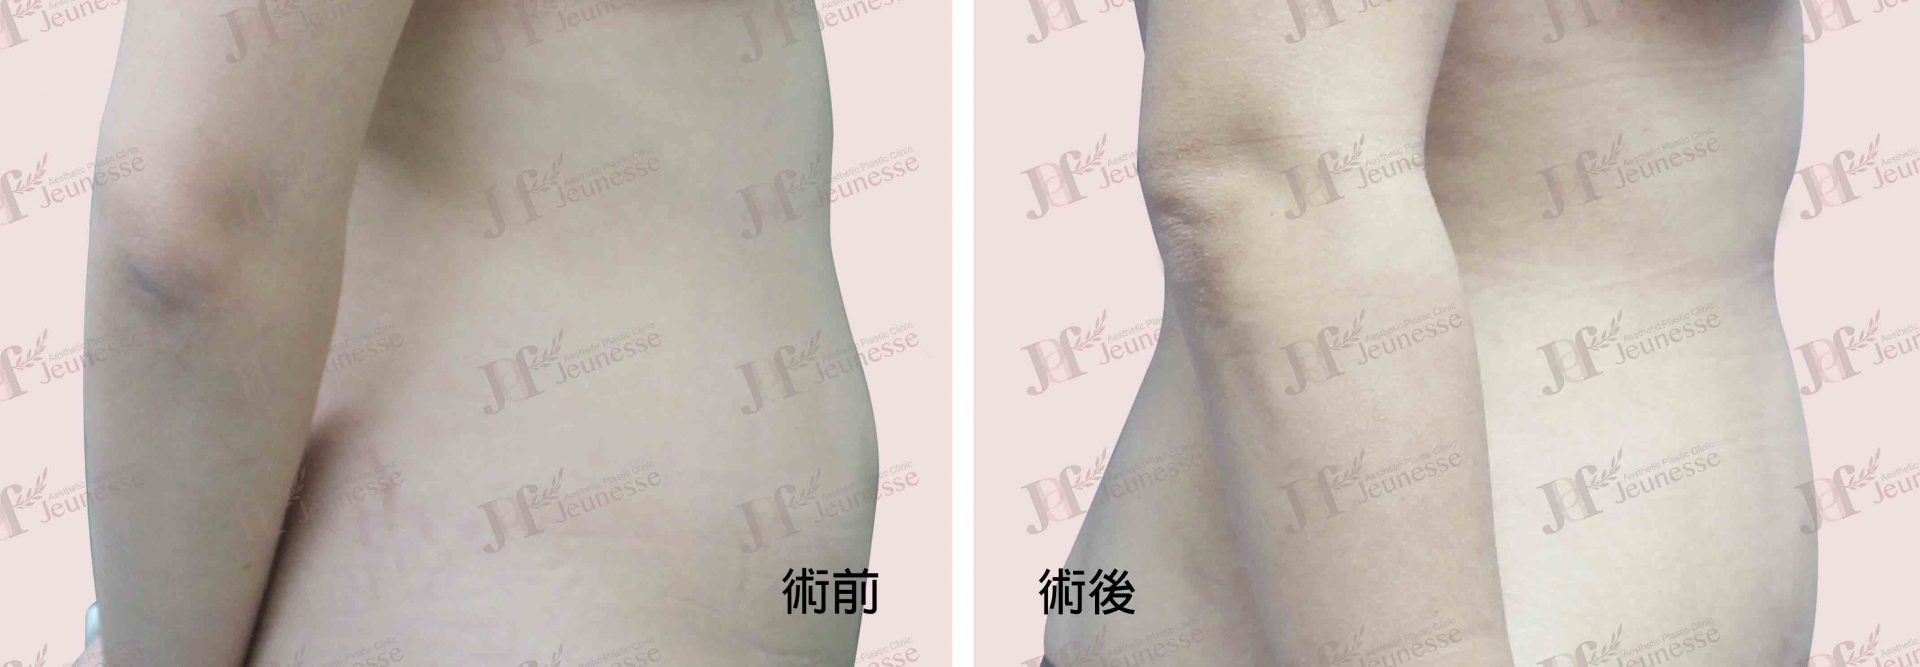 Liposuction- Abdomen case2 側面-浮水印